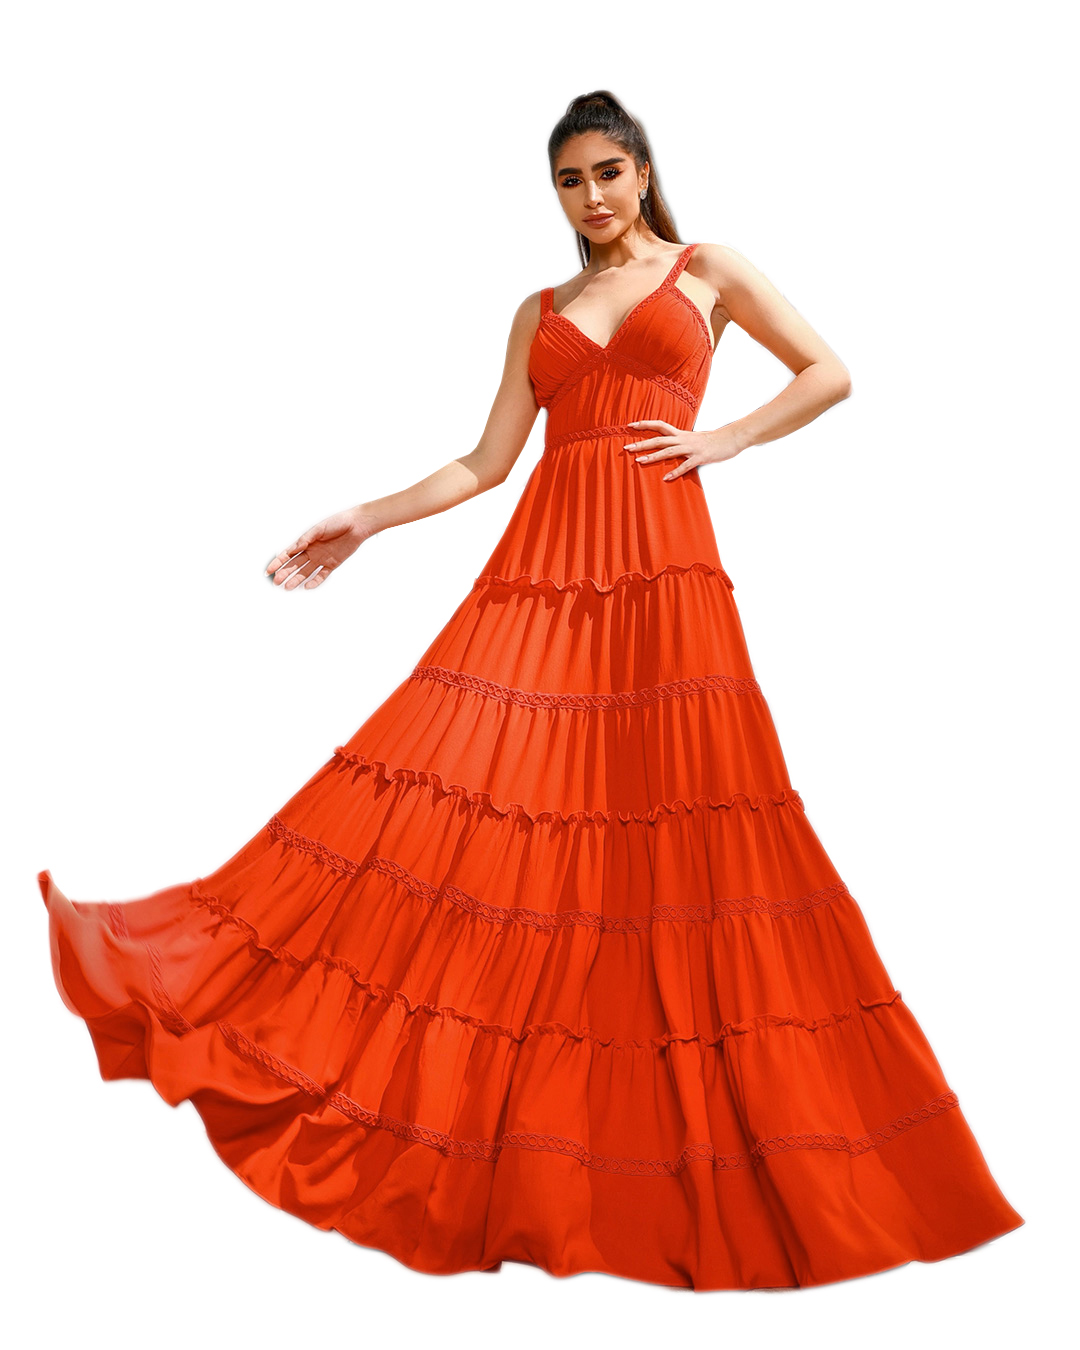 Dot Clothing - Dress Dot Clothing Long Lace Orange - 1563LAR